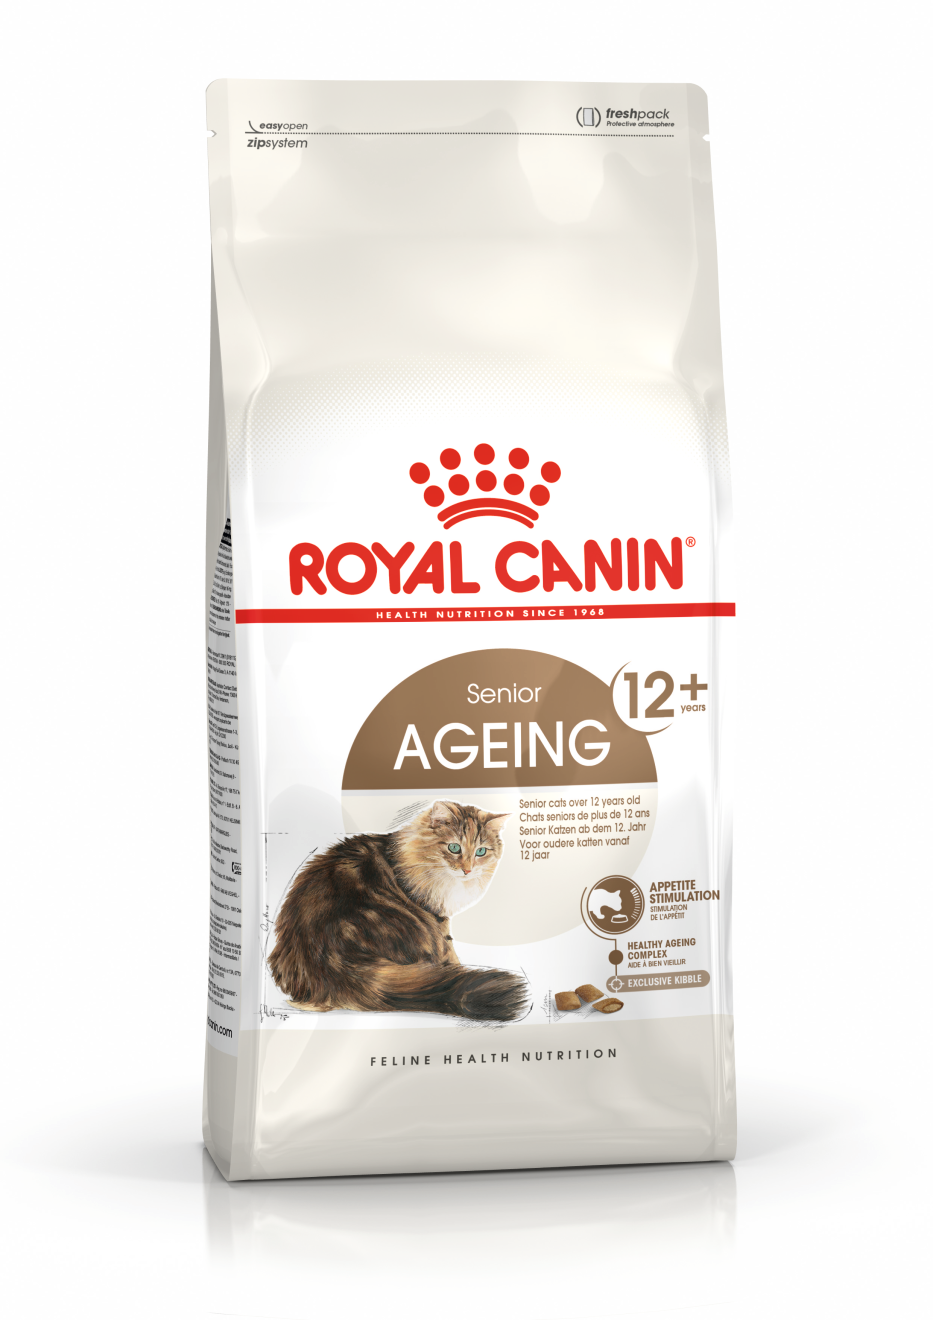 Royal Canin "Ageing 12+" сухой корм для кошек старше 12 лет 